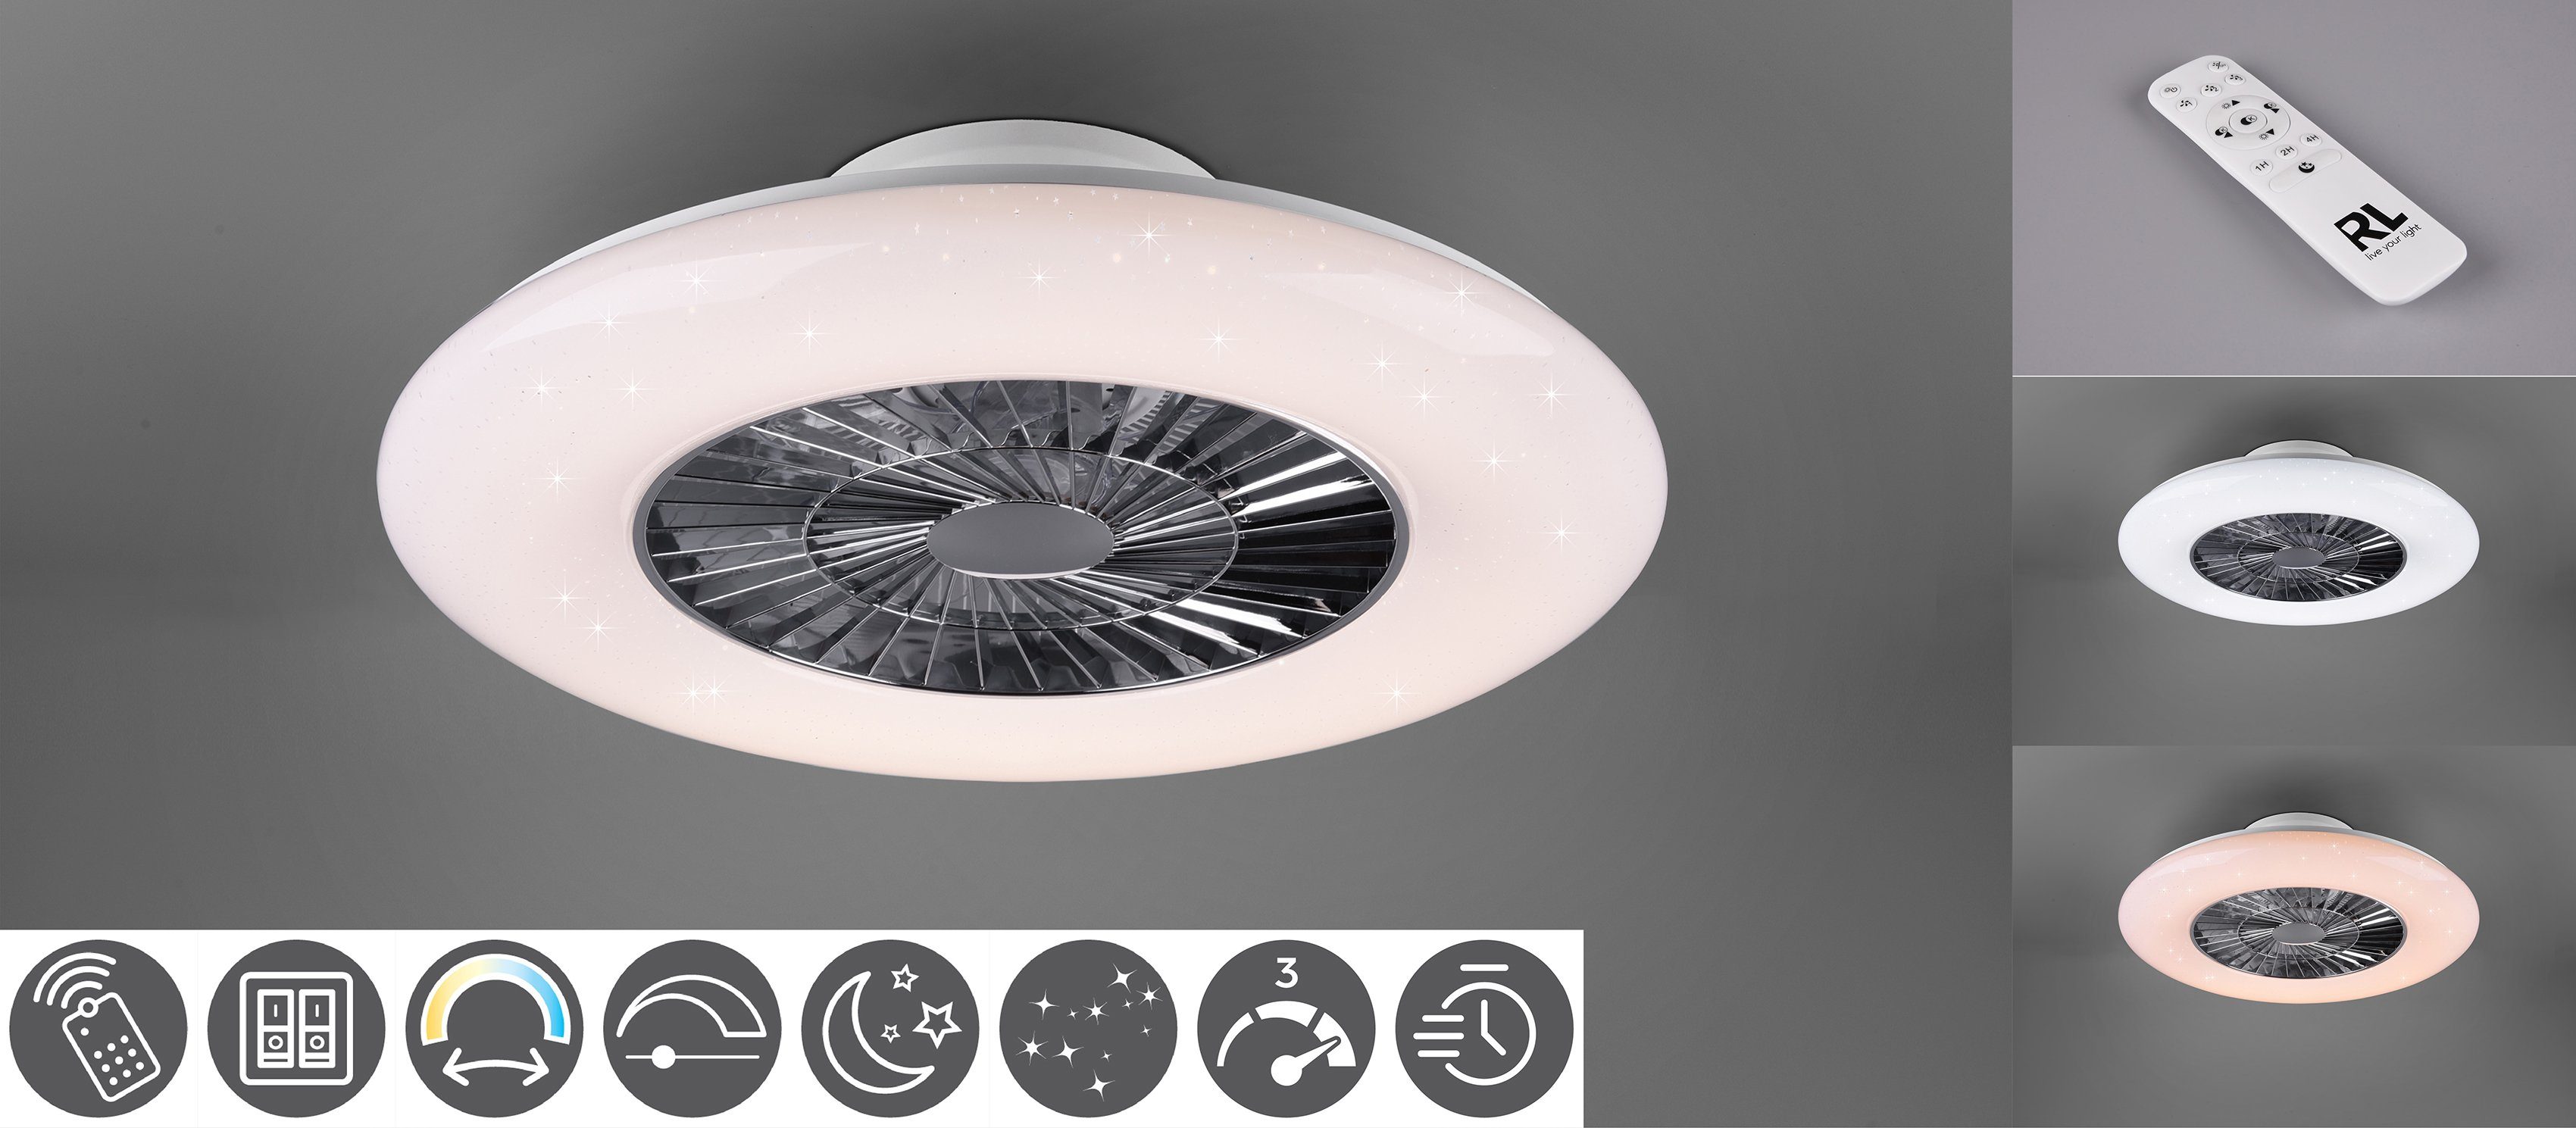 Ventilator, schaltbar Ventilator LED Neutralweiß, Fernbedienung., Leuchte/ Timerfunktion, fest LED getrennt Ventilatorfunktion, Deckenleuchte Visby, Leuchten integriert, mit TRIO